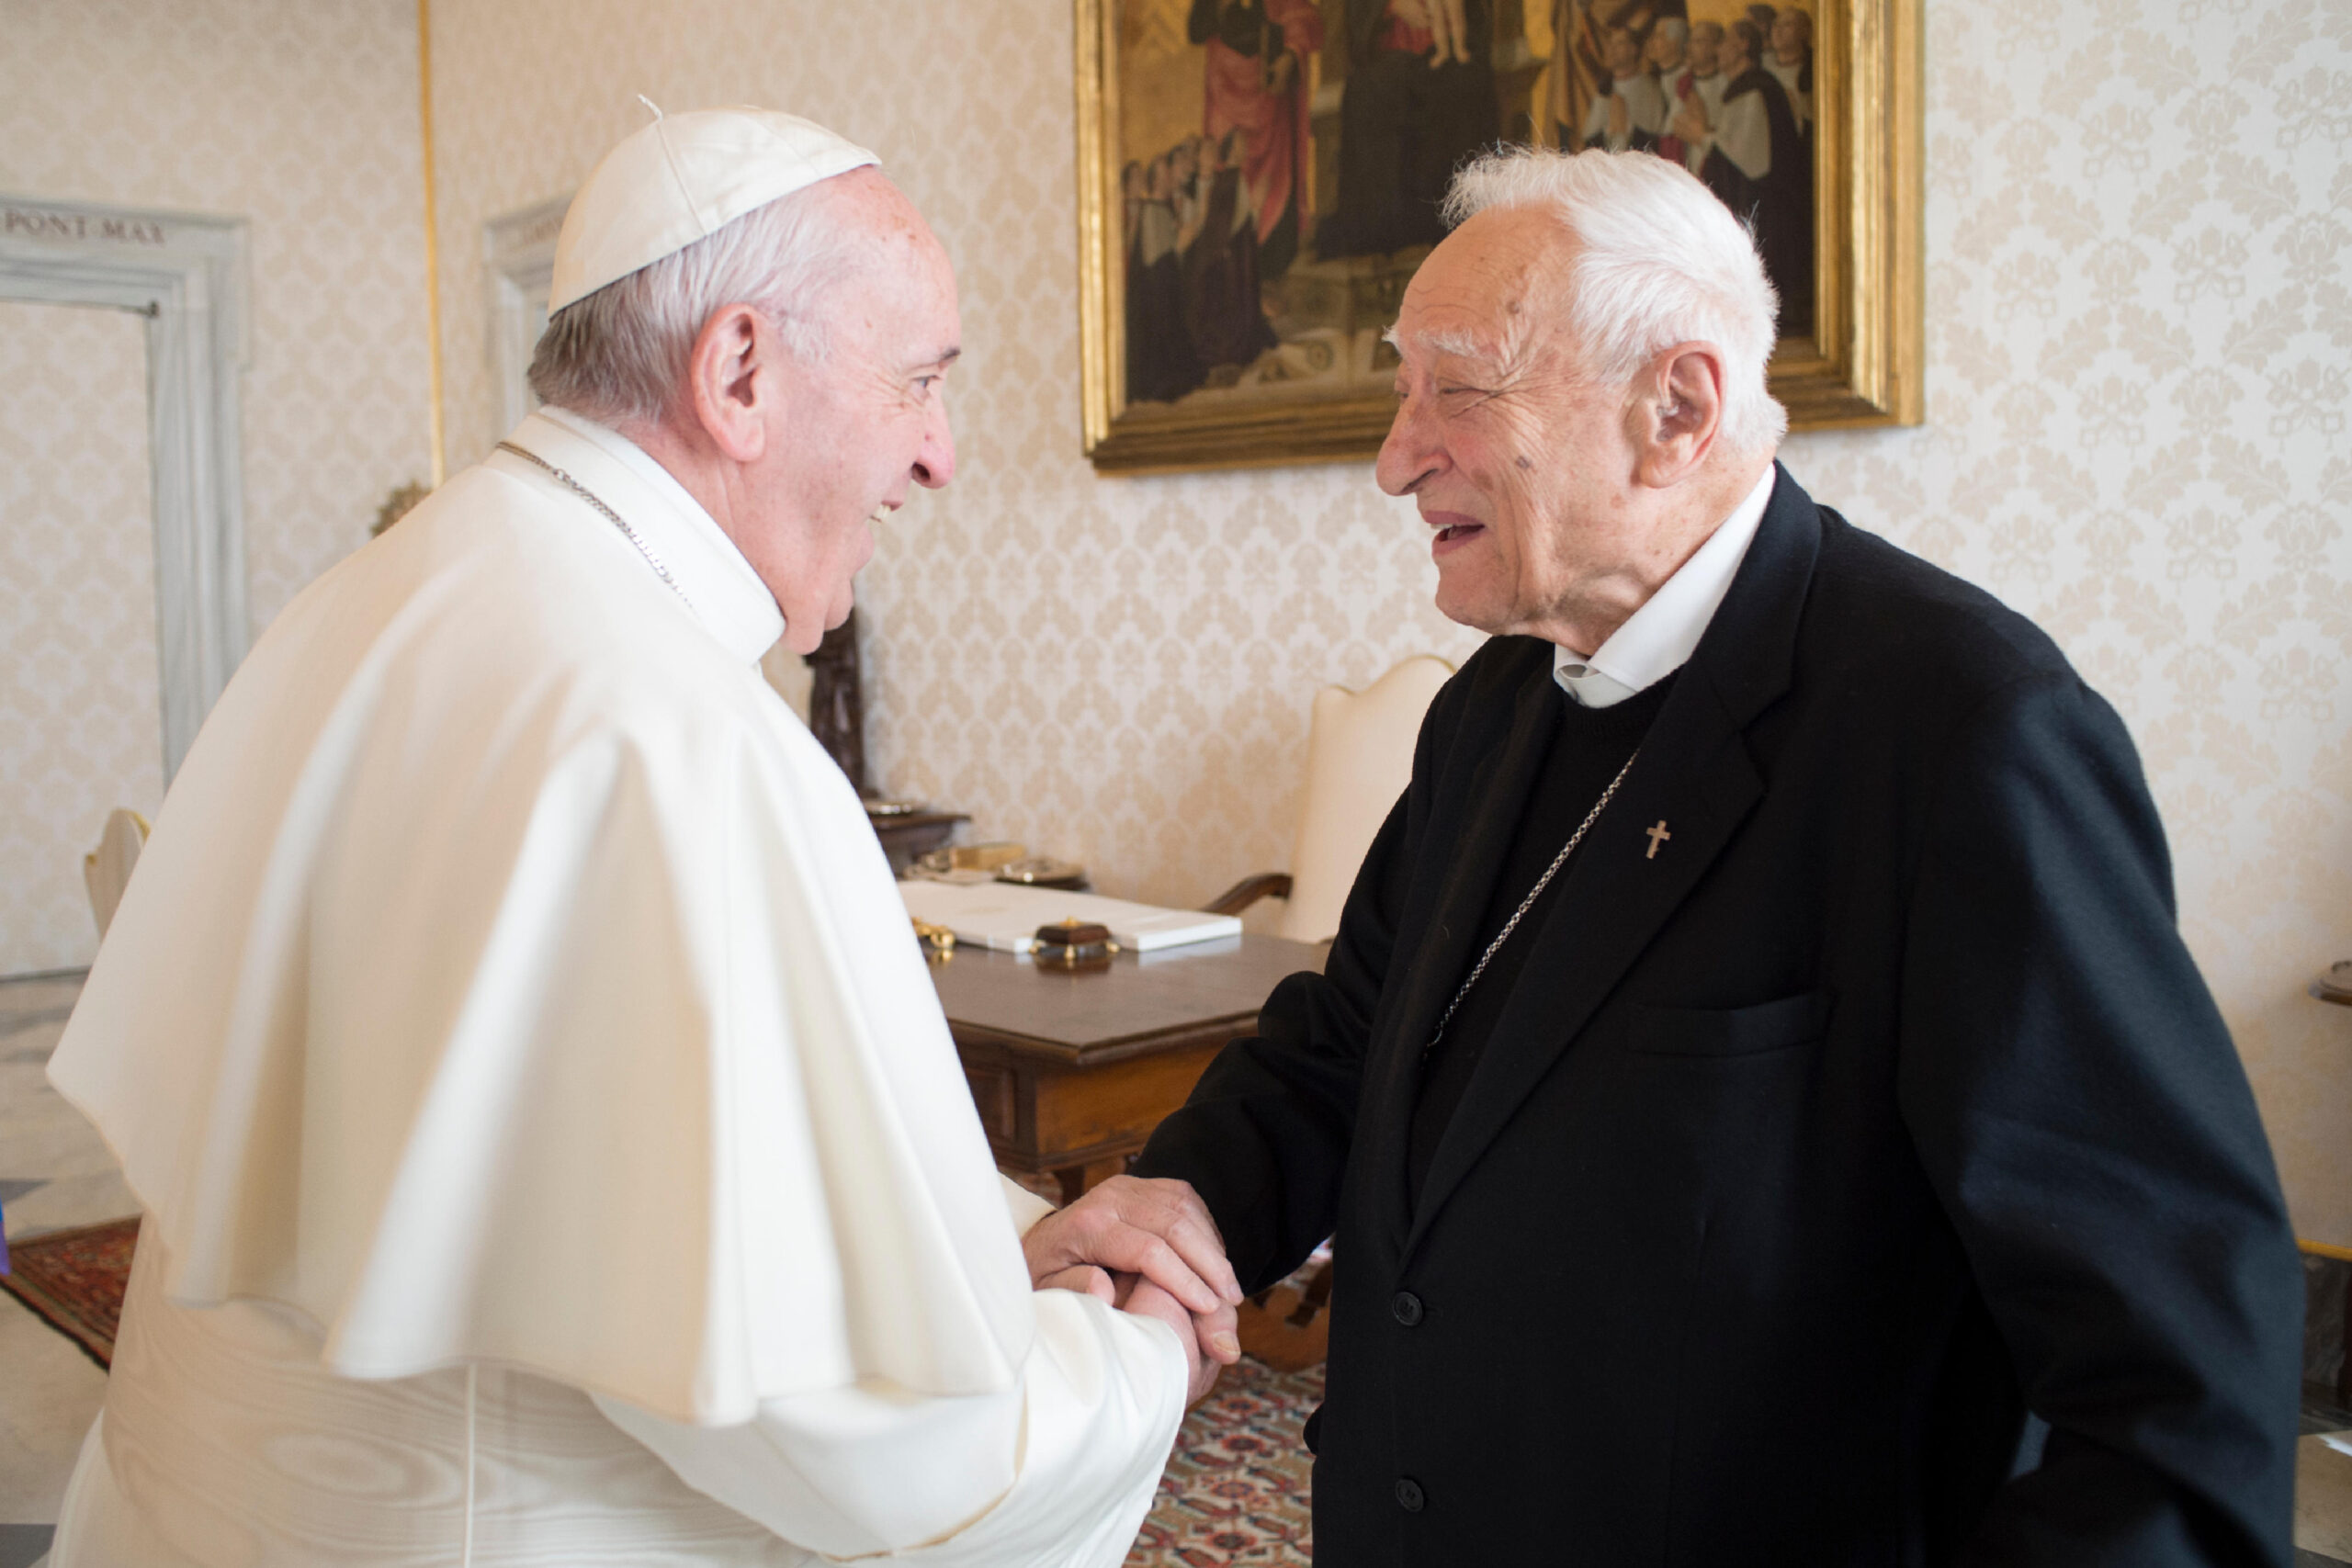 Addio a monsignor Luigi Bettazzi, il vescovo testimone di pace e giustizia sociale